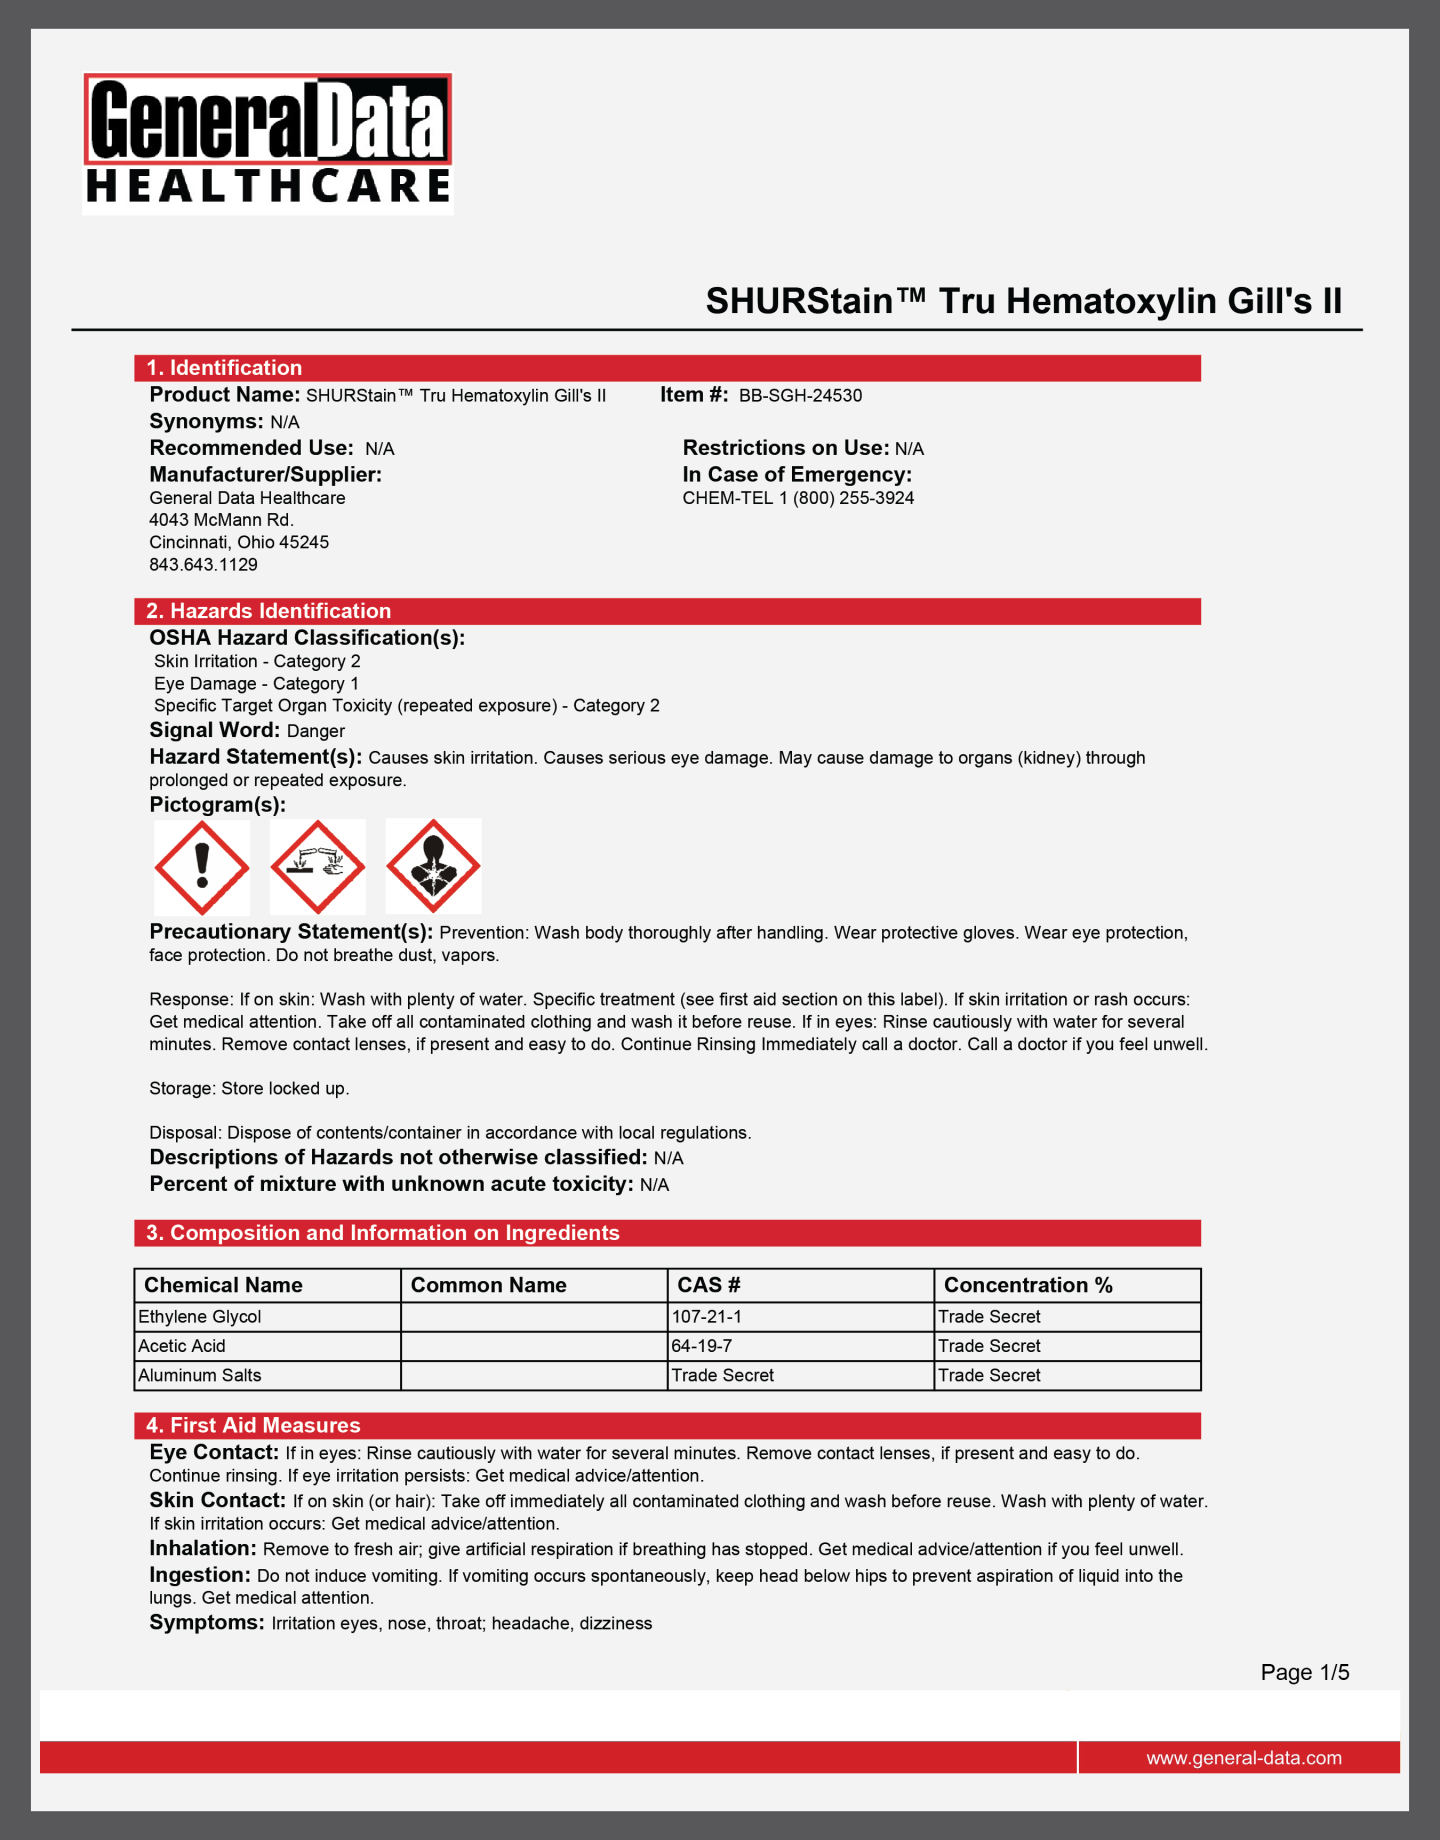 SHURStain Tru Hematoxylin Gill's II Safety Data Sheet